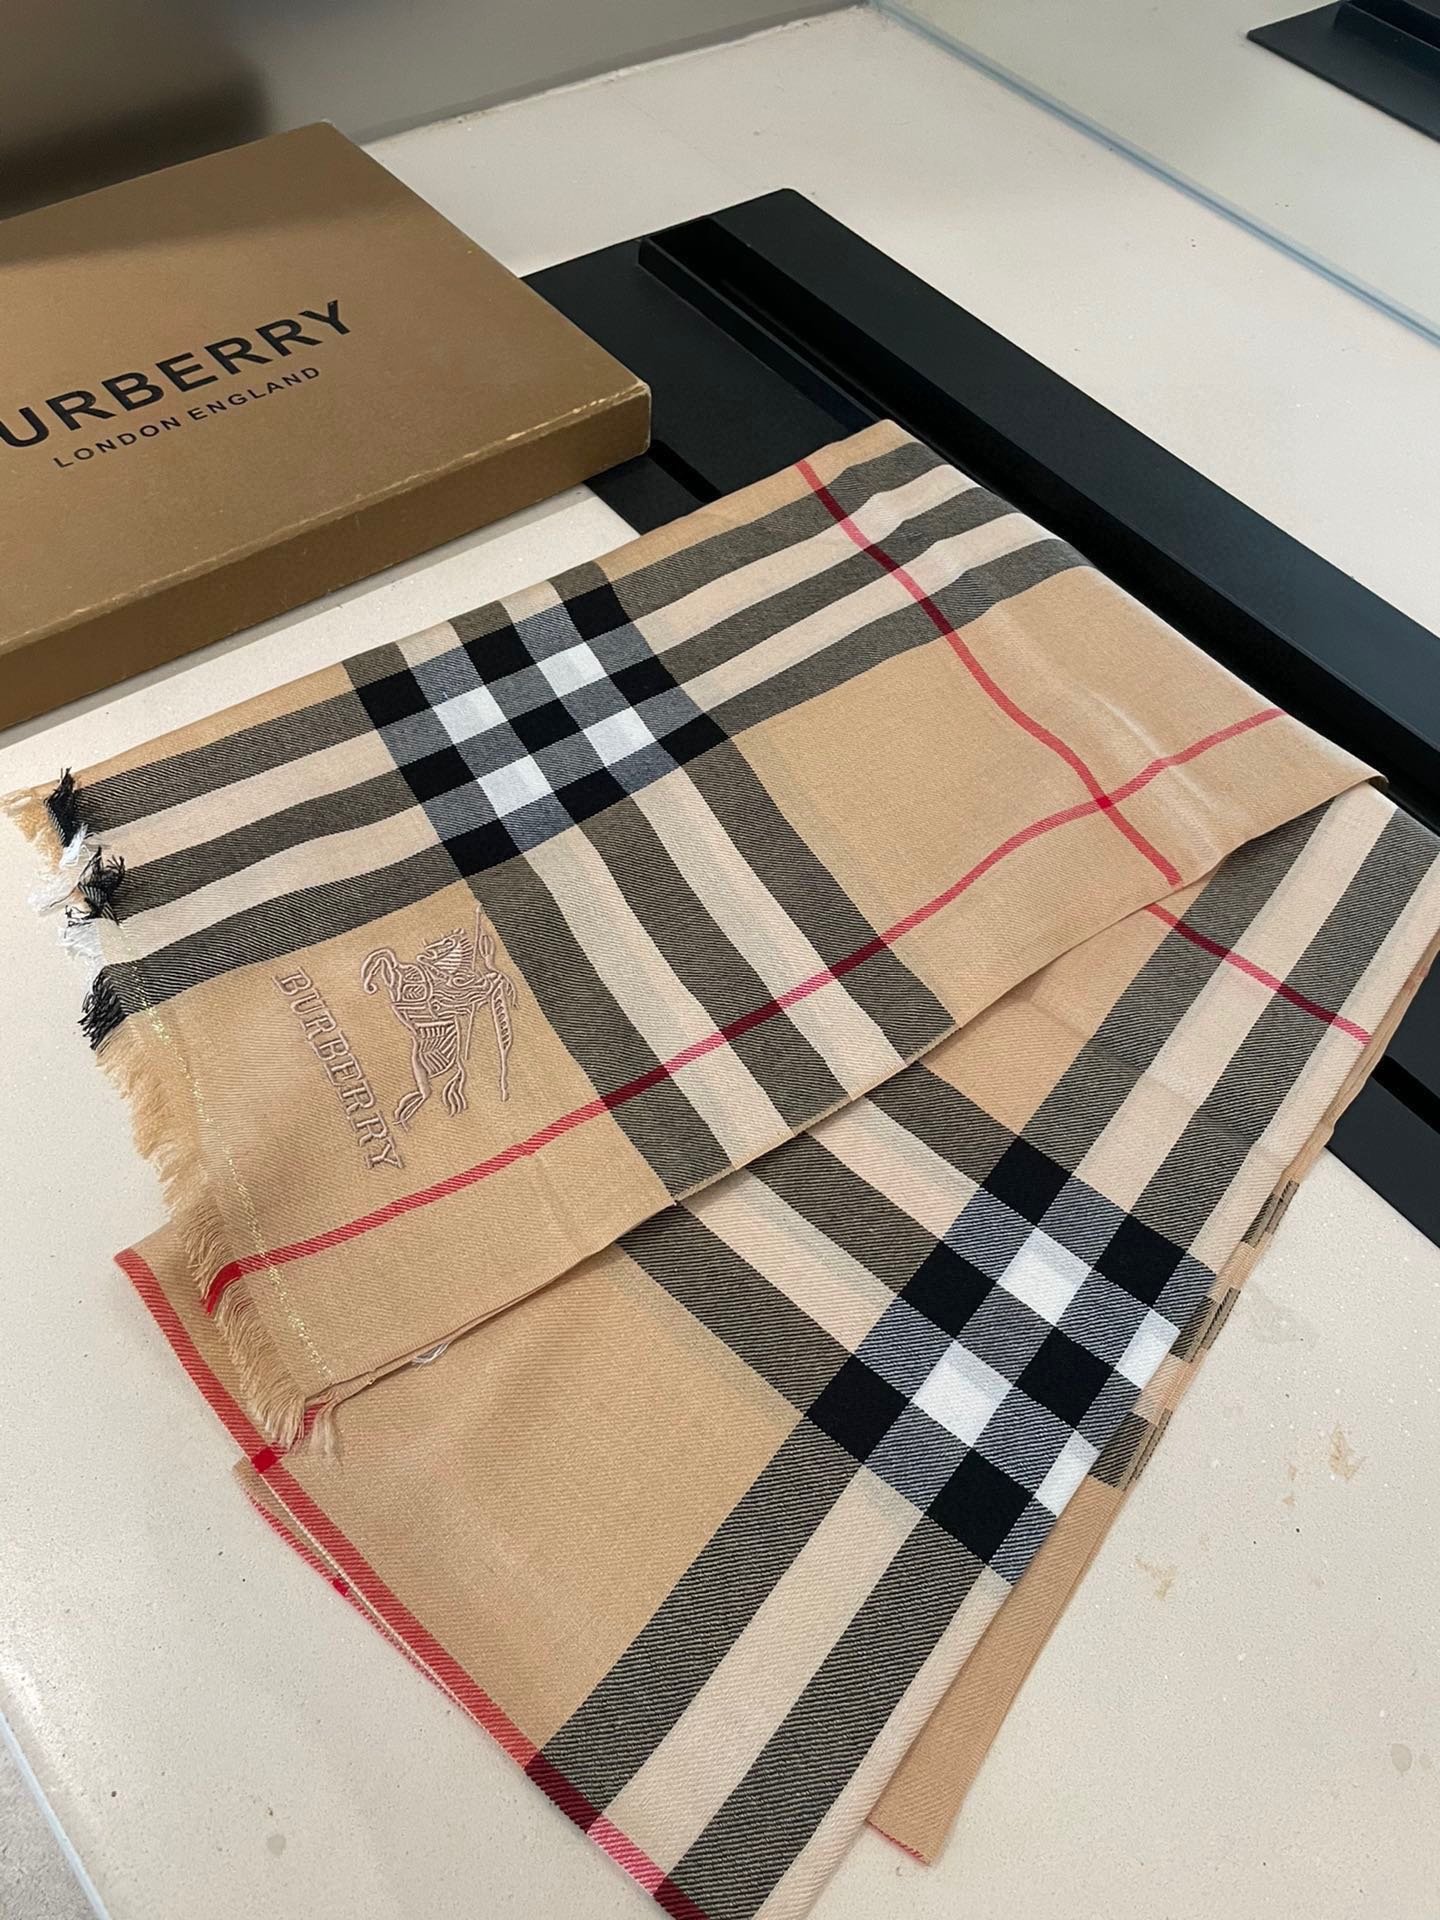 ️巴宝莉正装系列货专供旗舰店的vi顶级苏格兰进口山羊绒无比的高贵优雅知性的款式简洁大气的设计绝对的不是花